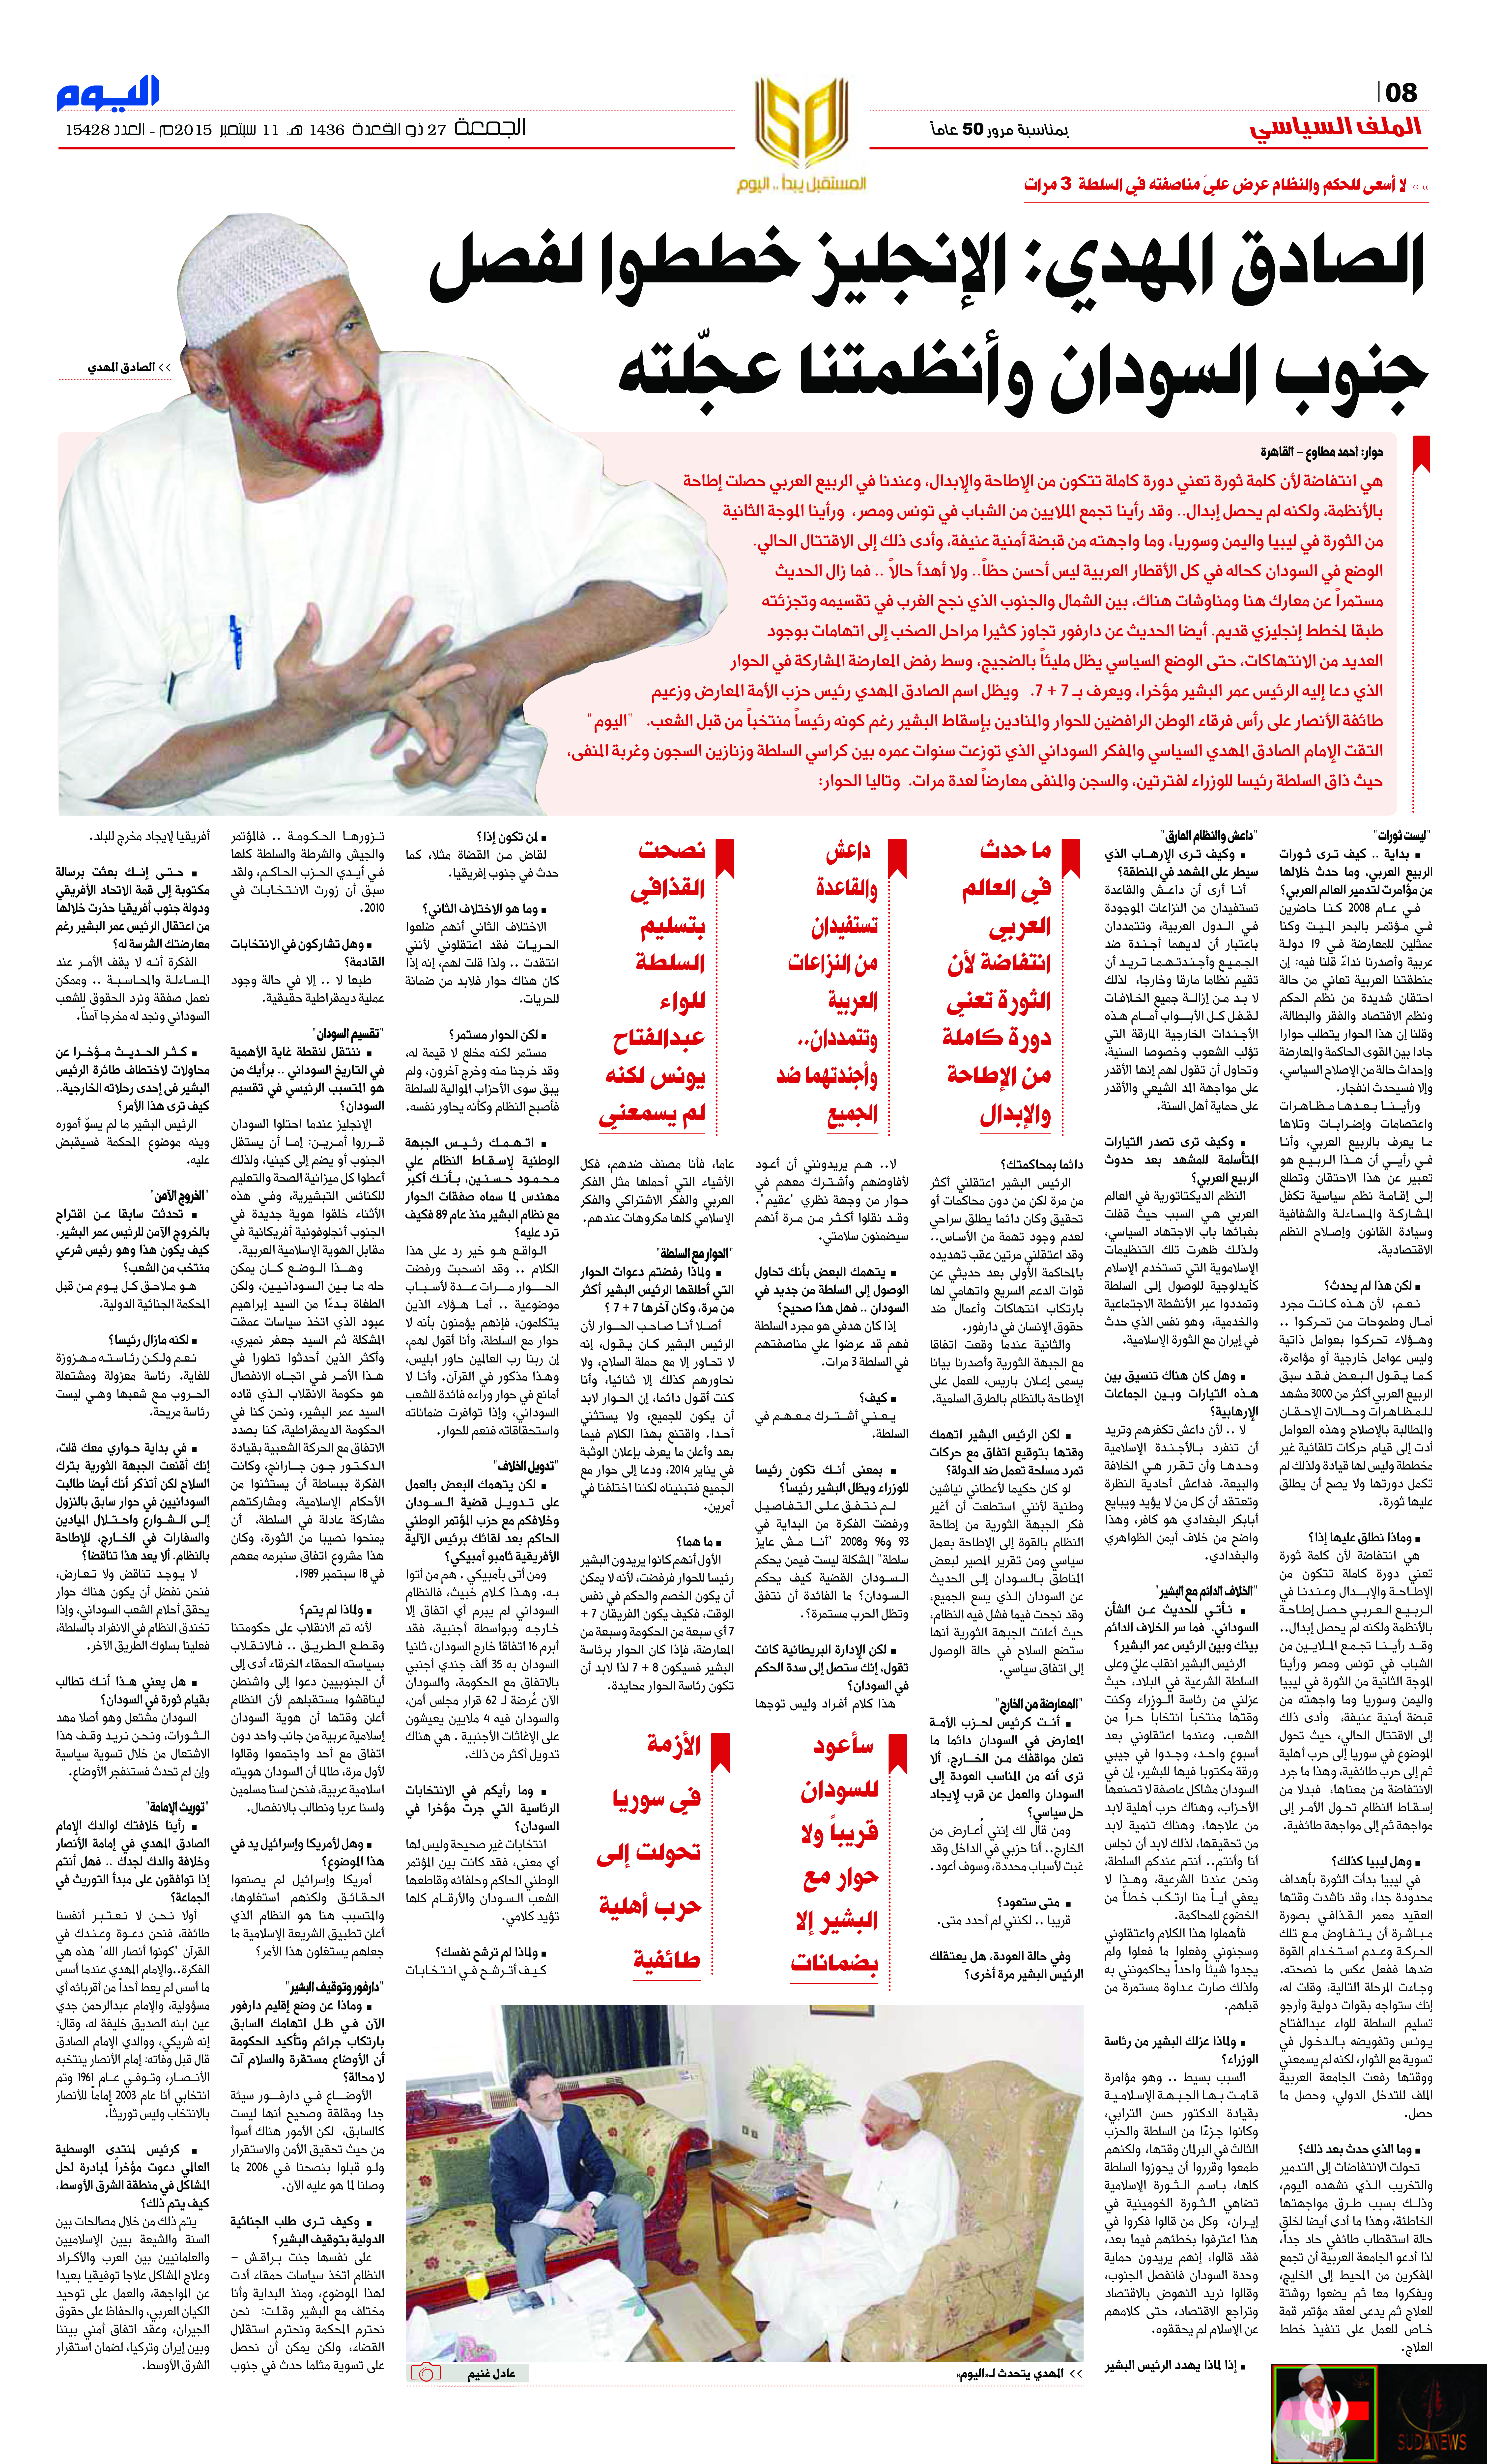 اليوم السعودية - الجمعة 27 ذو القعدة 1436 هـ الموافق 11 سبتمبر 2015 العدد 15428 - الصفحة 8